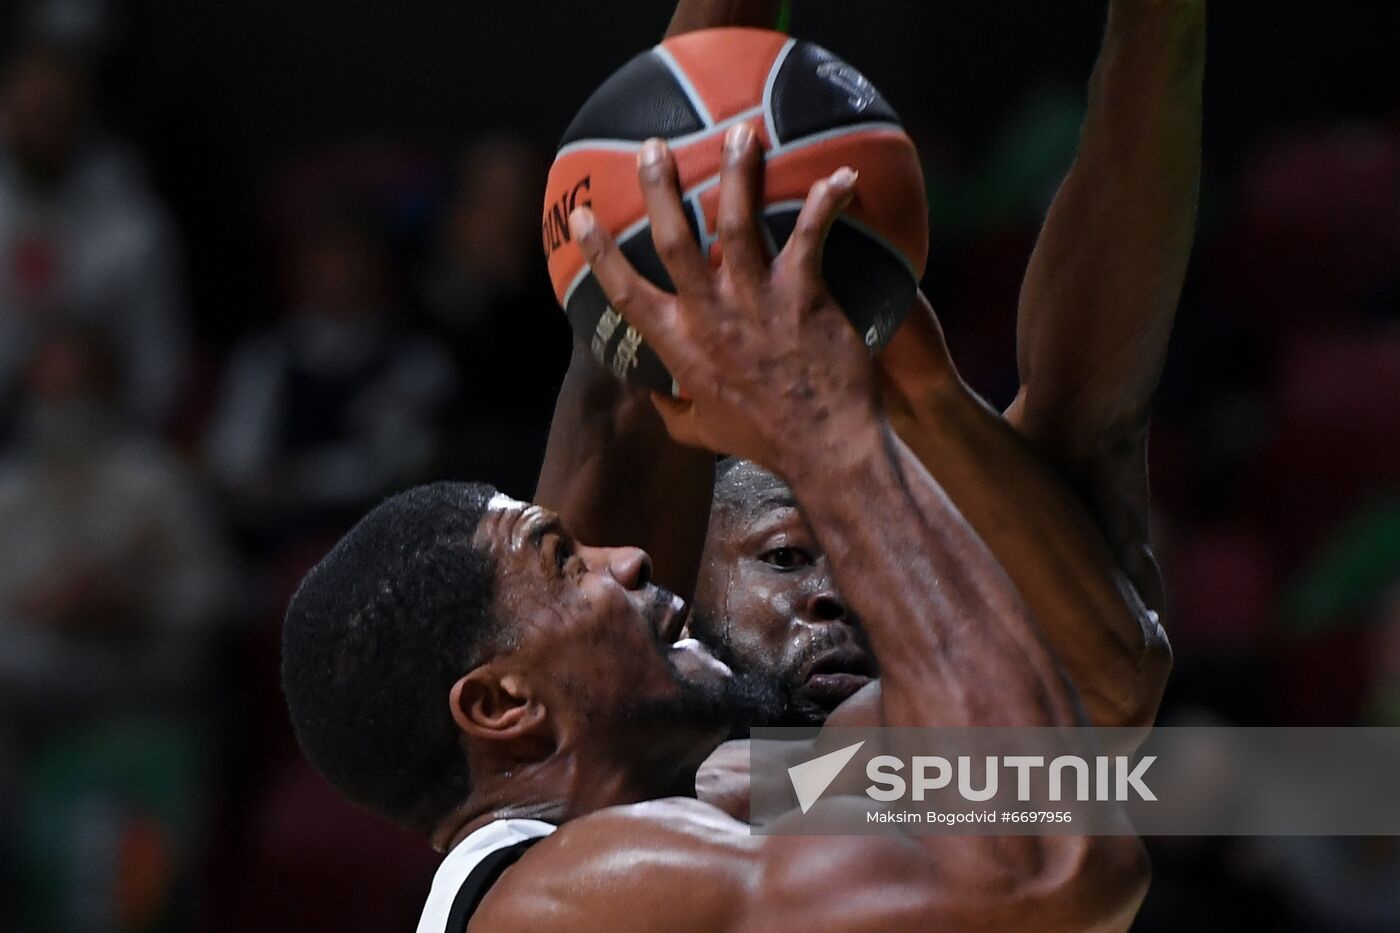 Russia Basketball Euroleague UNICS - Olimpia